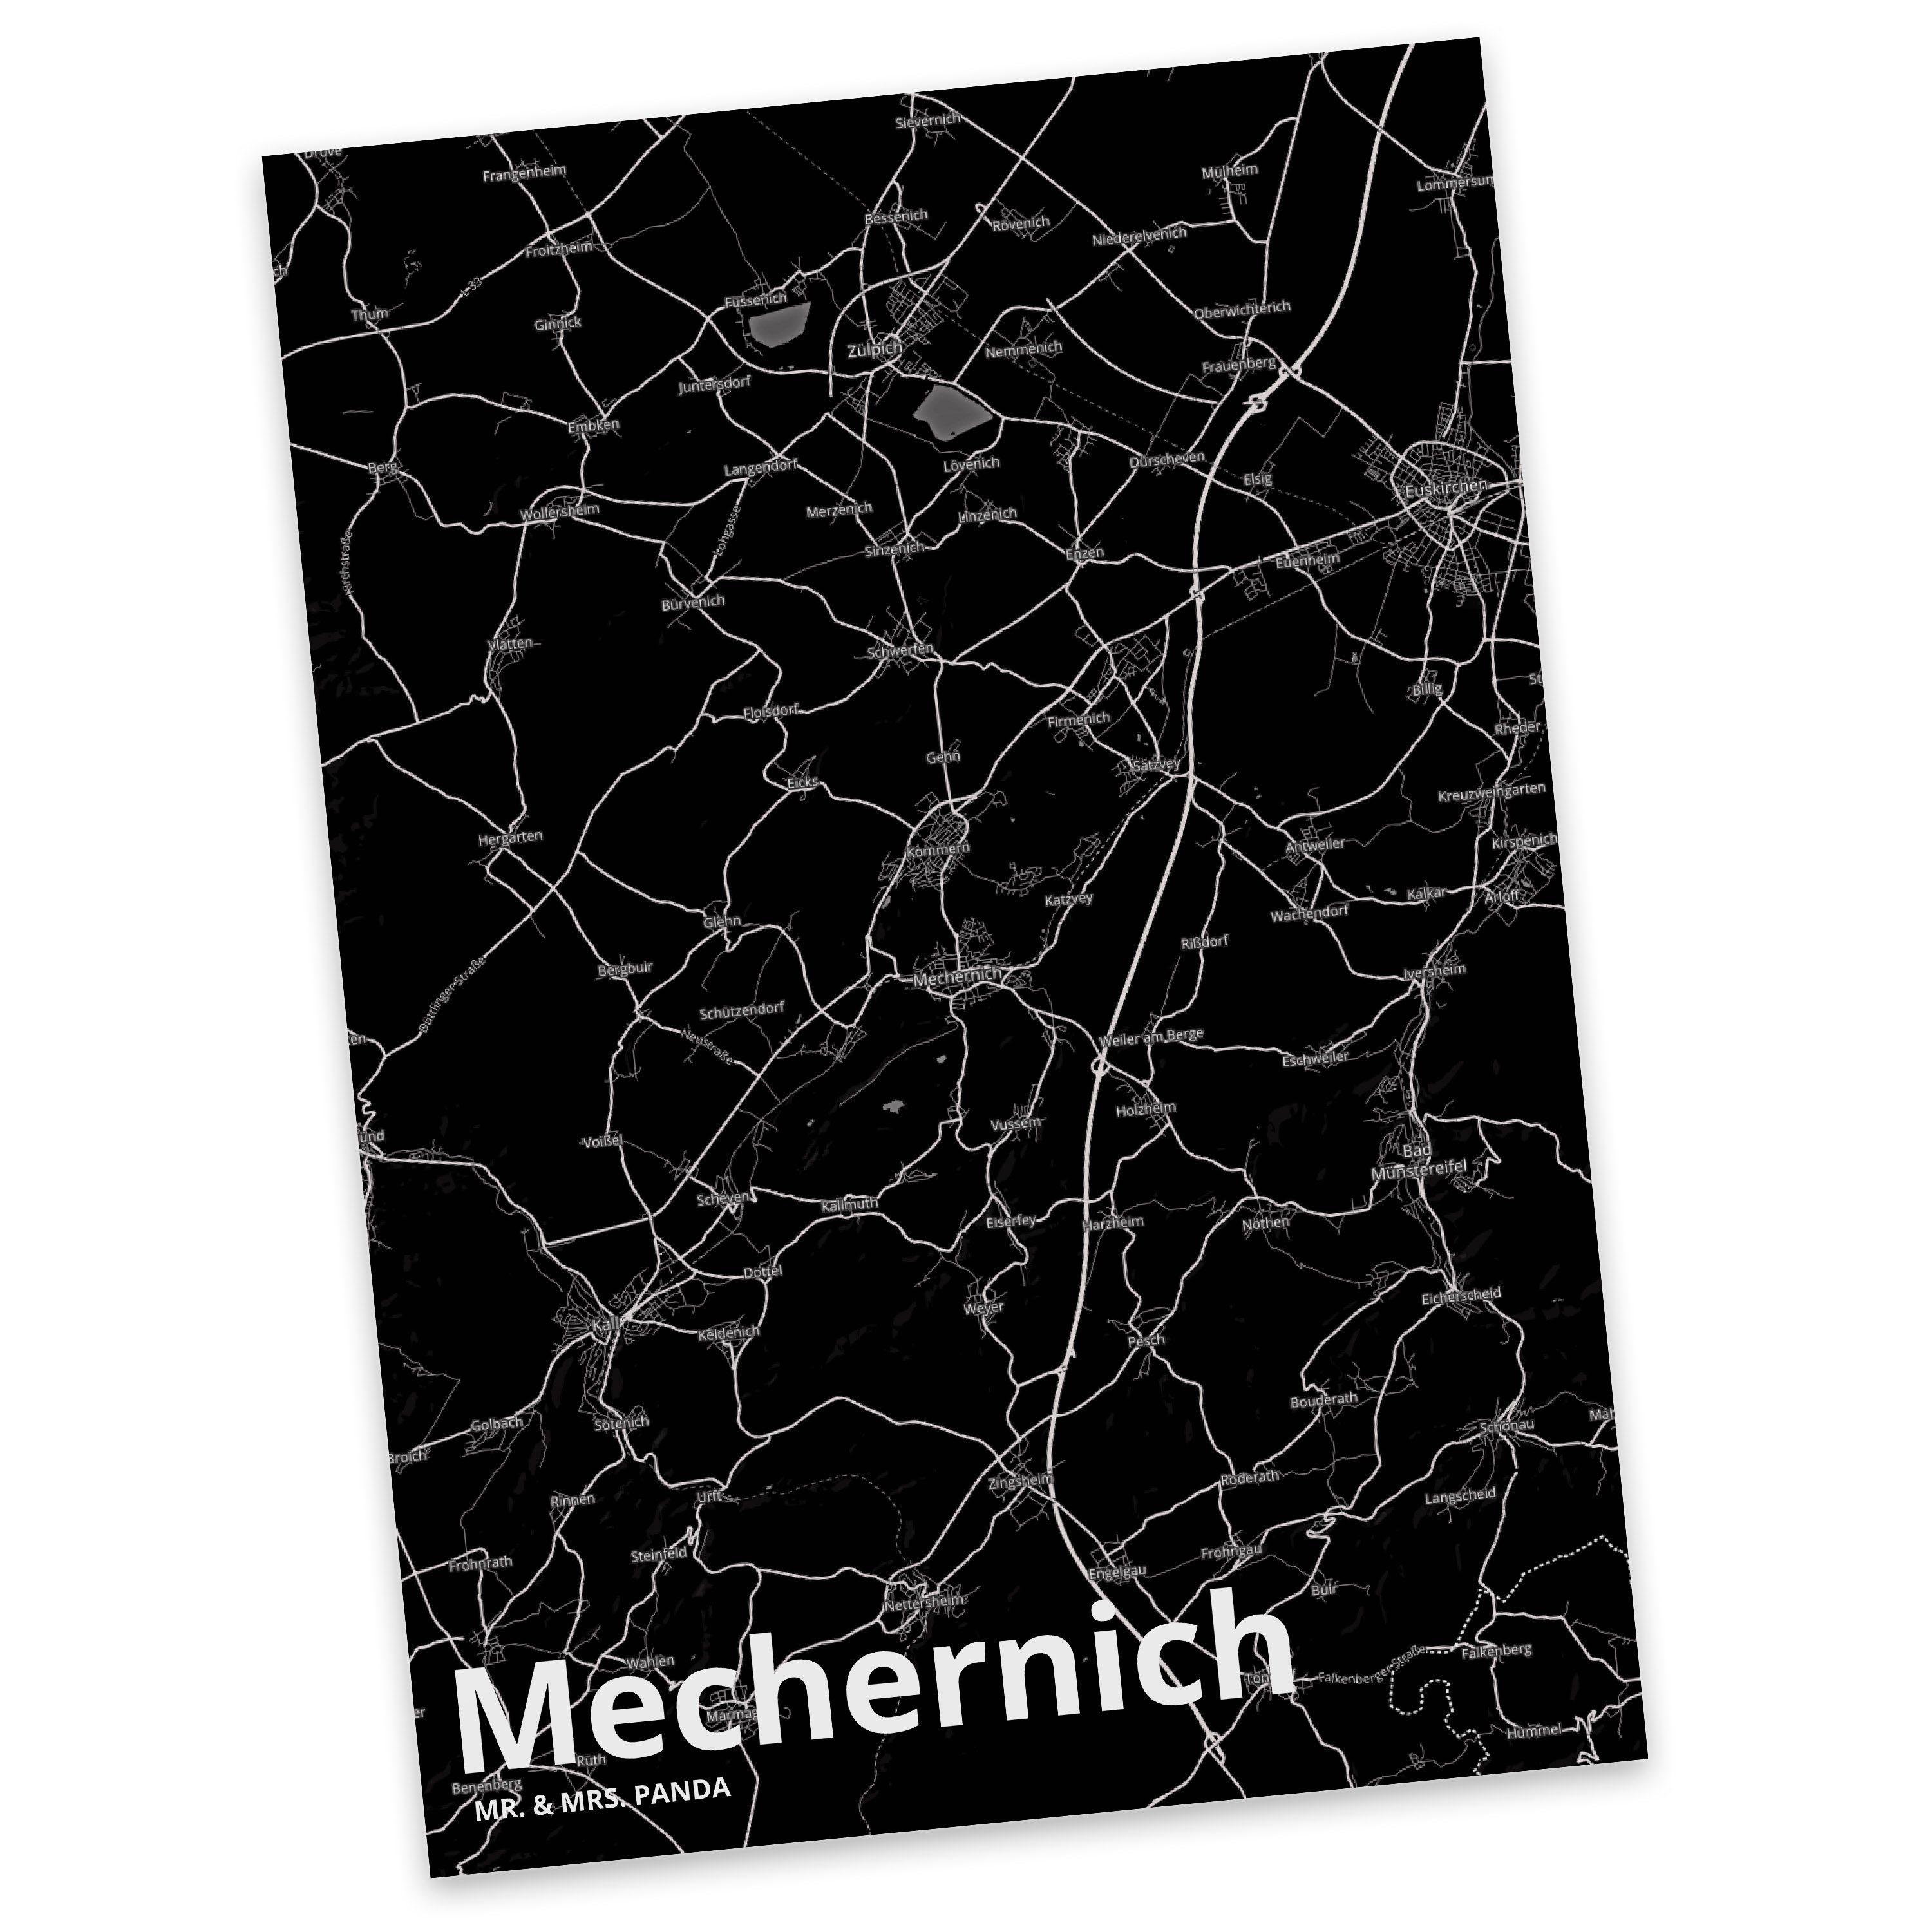 Mr. & Mrs. Panda Postkarte Mechernich - Geschenk, Städte, Karte, Einladung, Einladungskarte, Sta